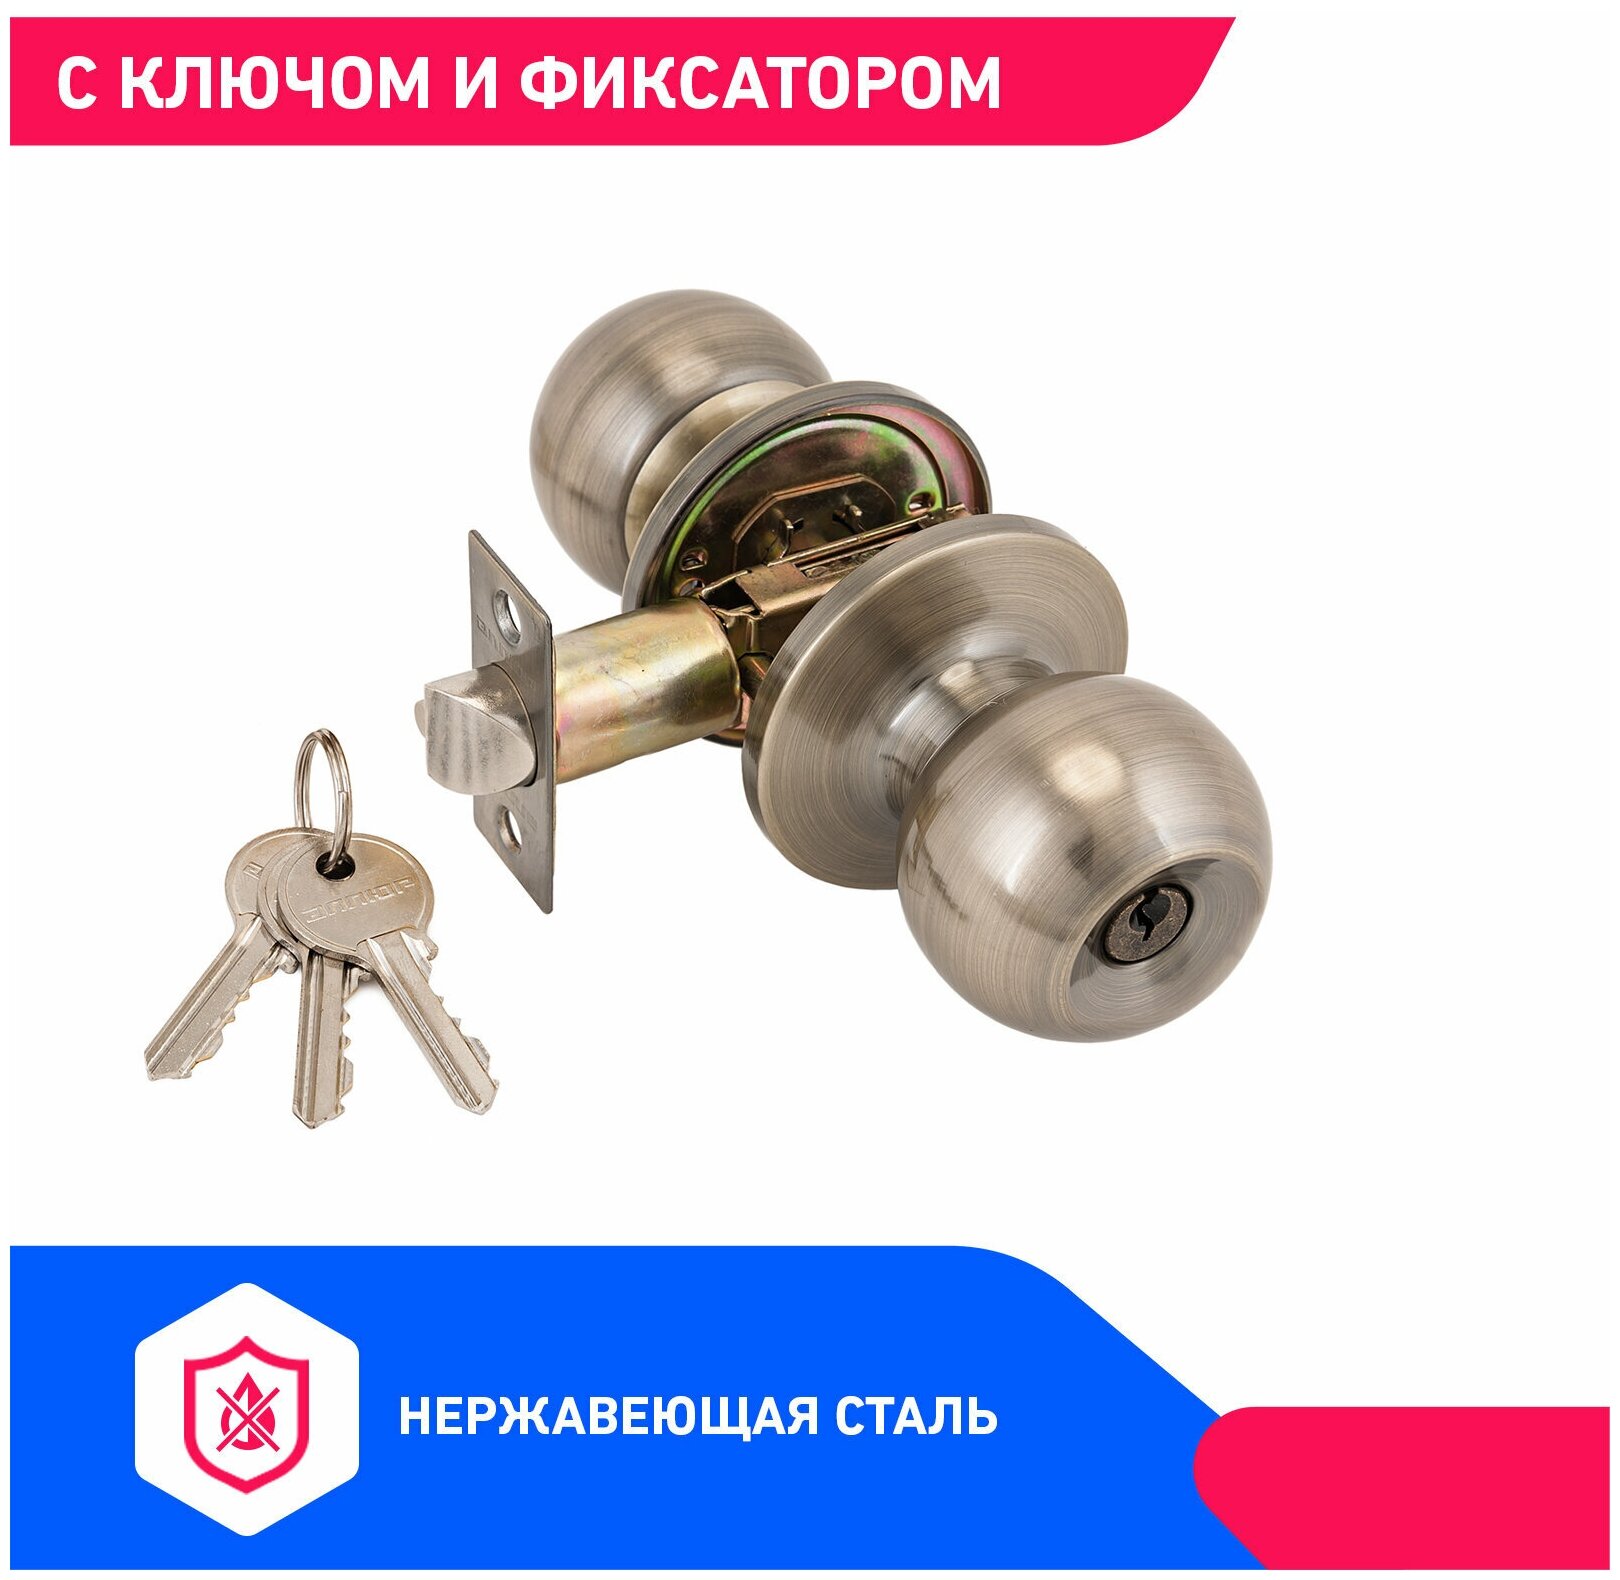 Ручка-защелка дверная межкомнатная (кноб) с ключом и фиксатором (цвет бронза) аллюр 5560 AB